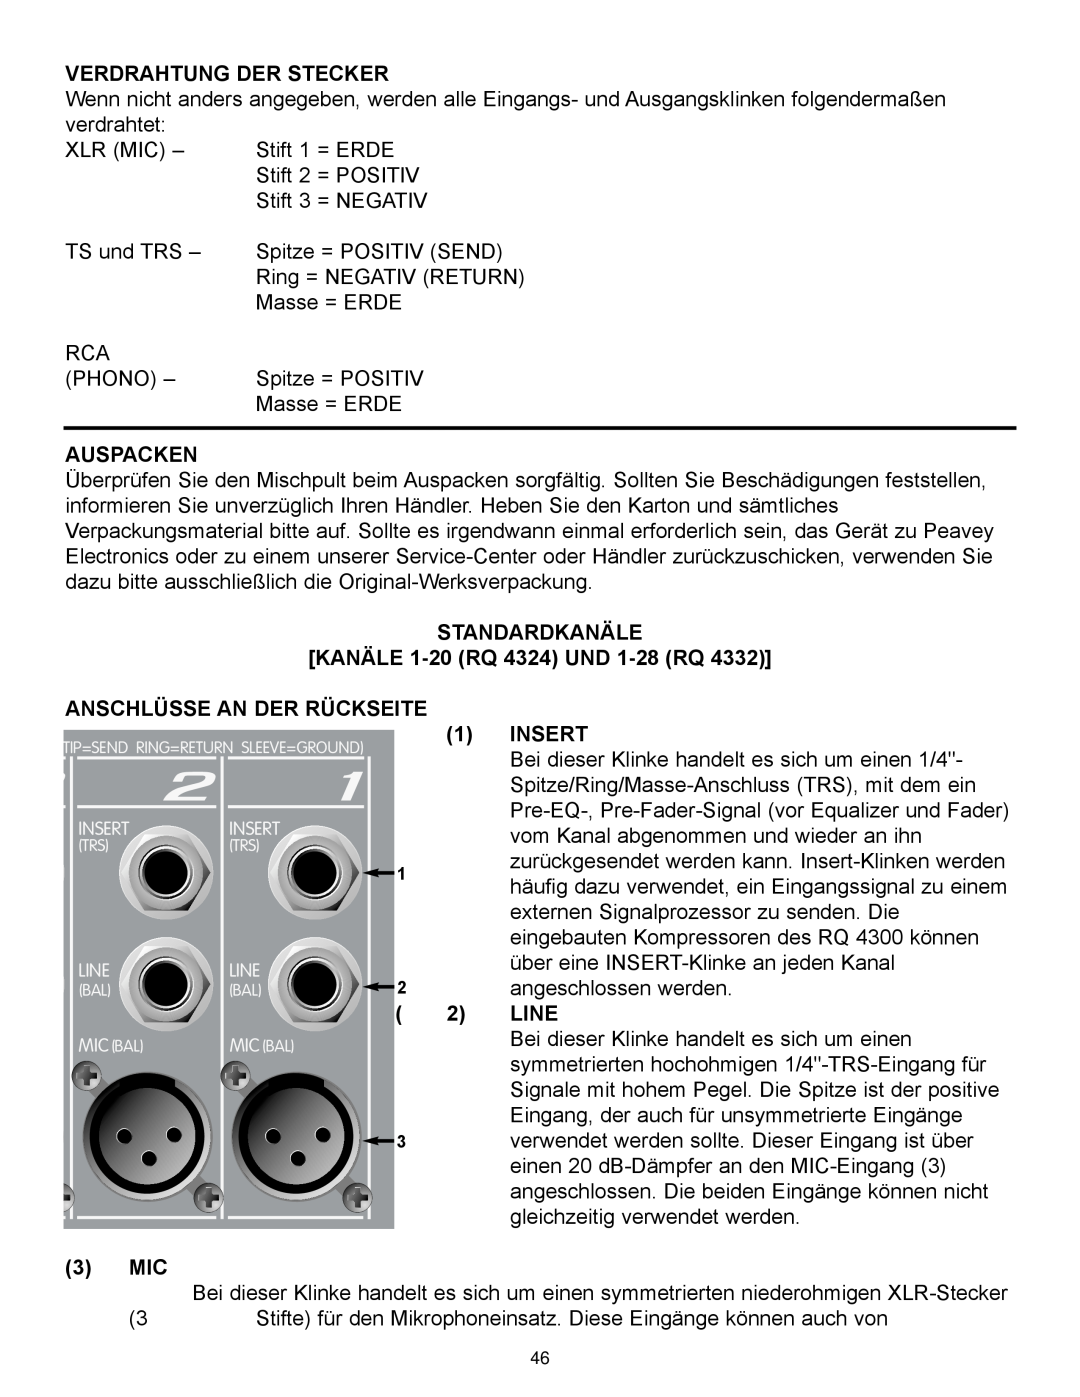 Peavey RQ 4300 Series Verdrahtung Der Stecker, Auspacken, STANDARDKANÄLE KANÄLE 1-20 RQ 4324 UND 1-28 RQ, Insert, Line 